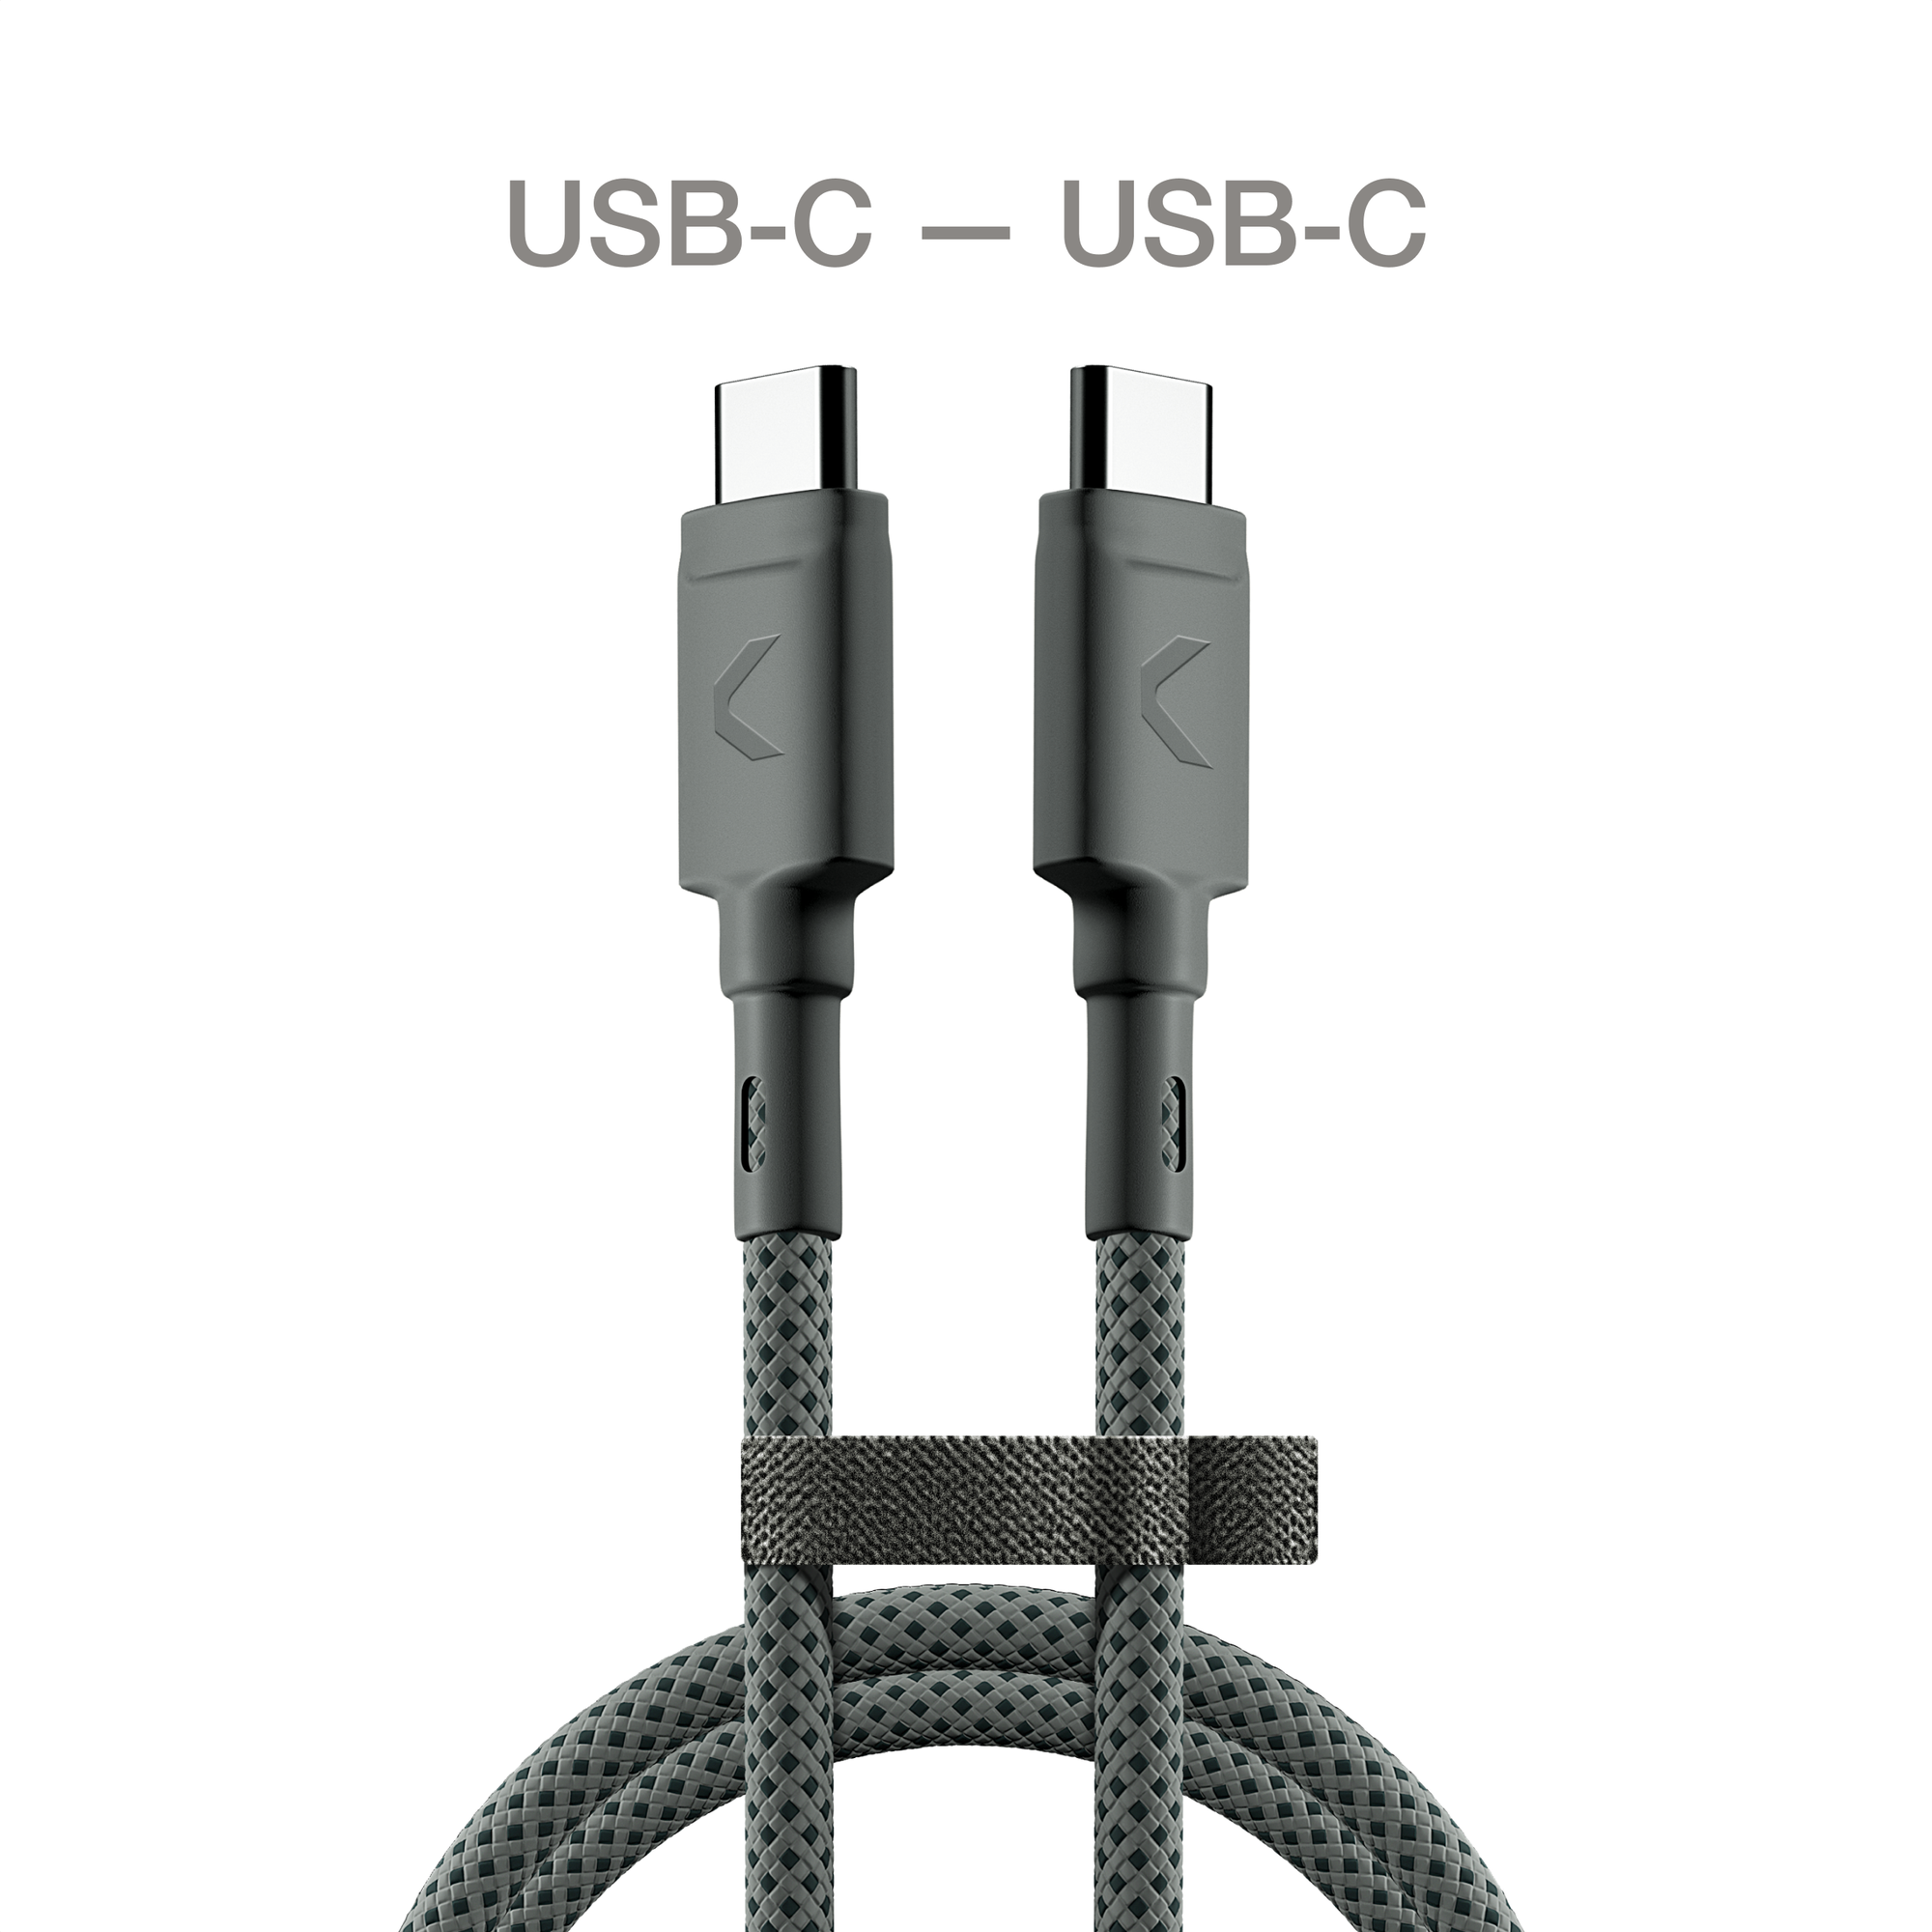 Кабель COMMO Range Cable USB-C - USB-C new